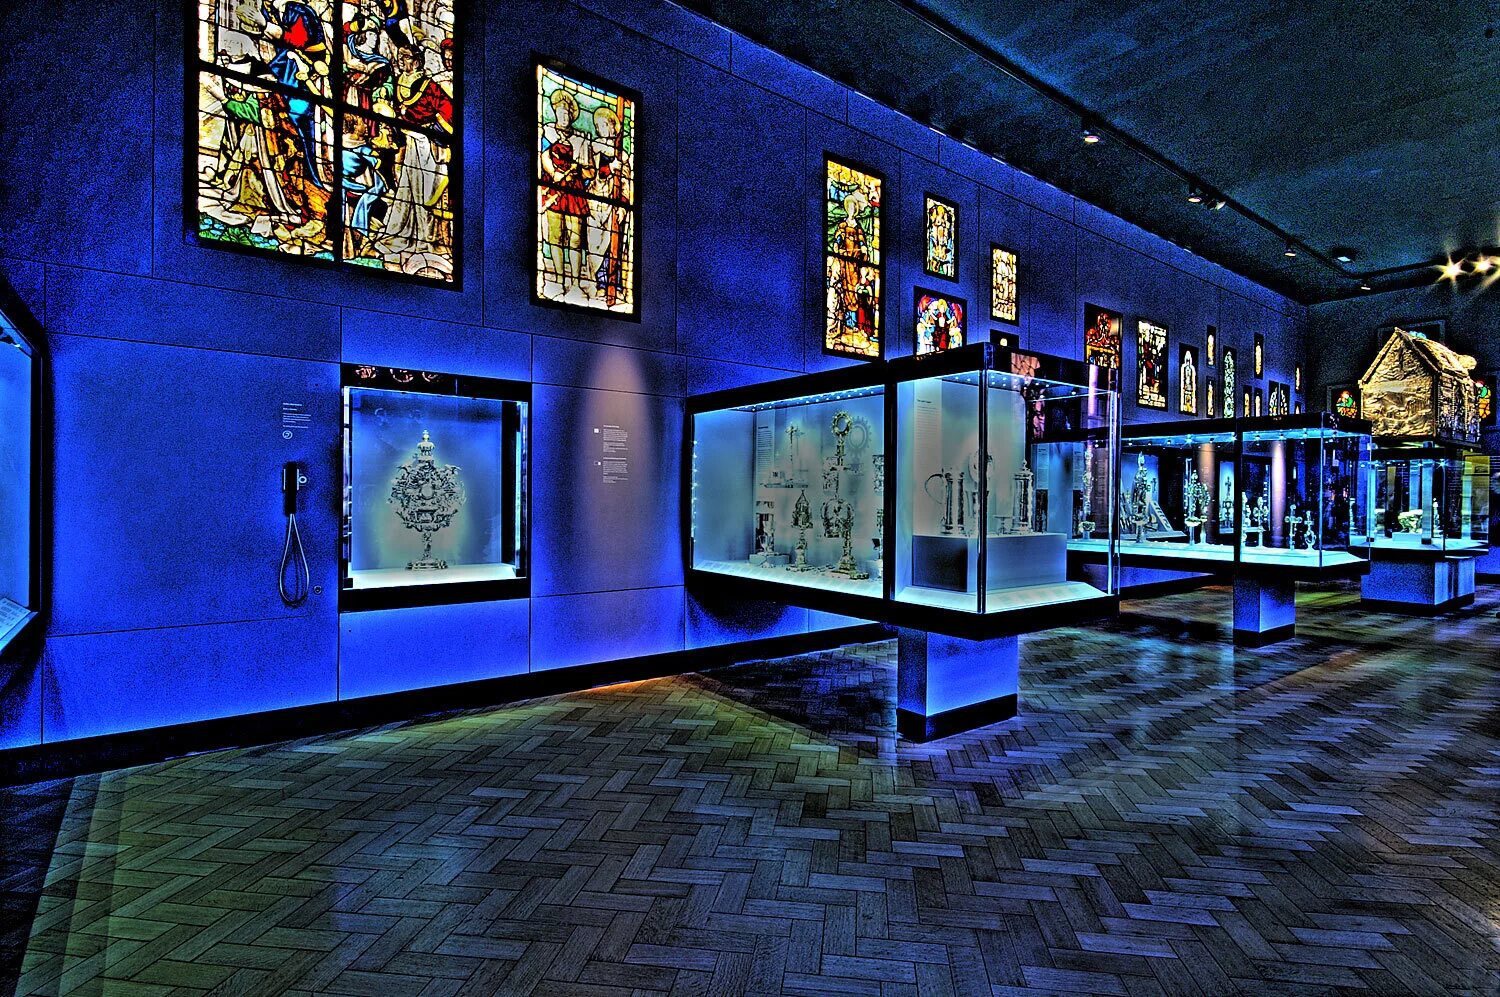 Музей виктории в лондоне